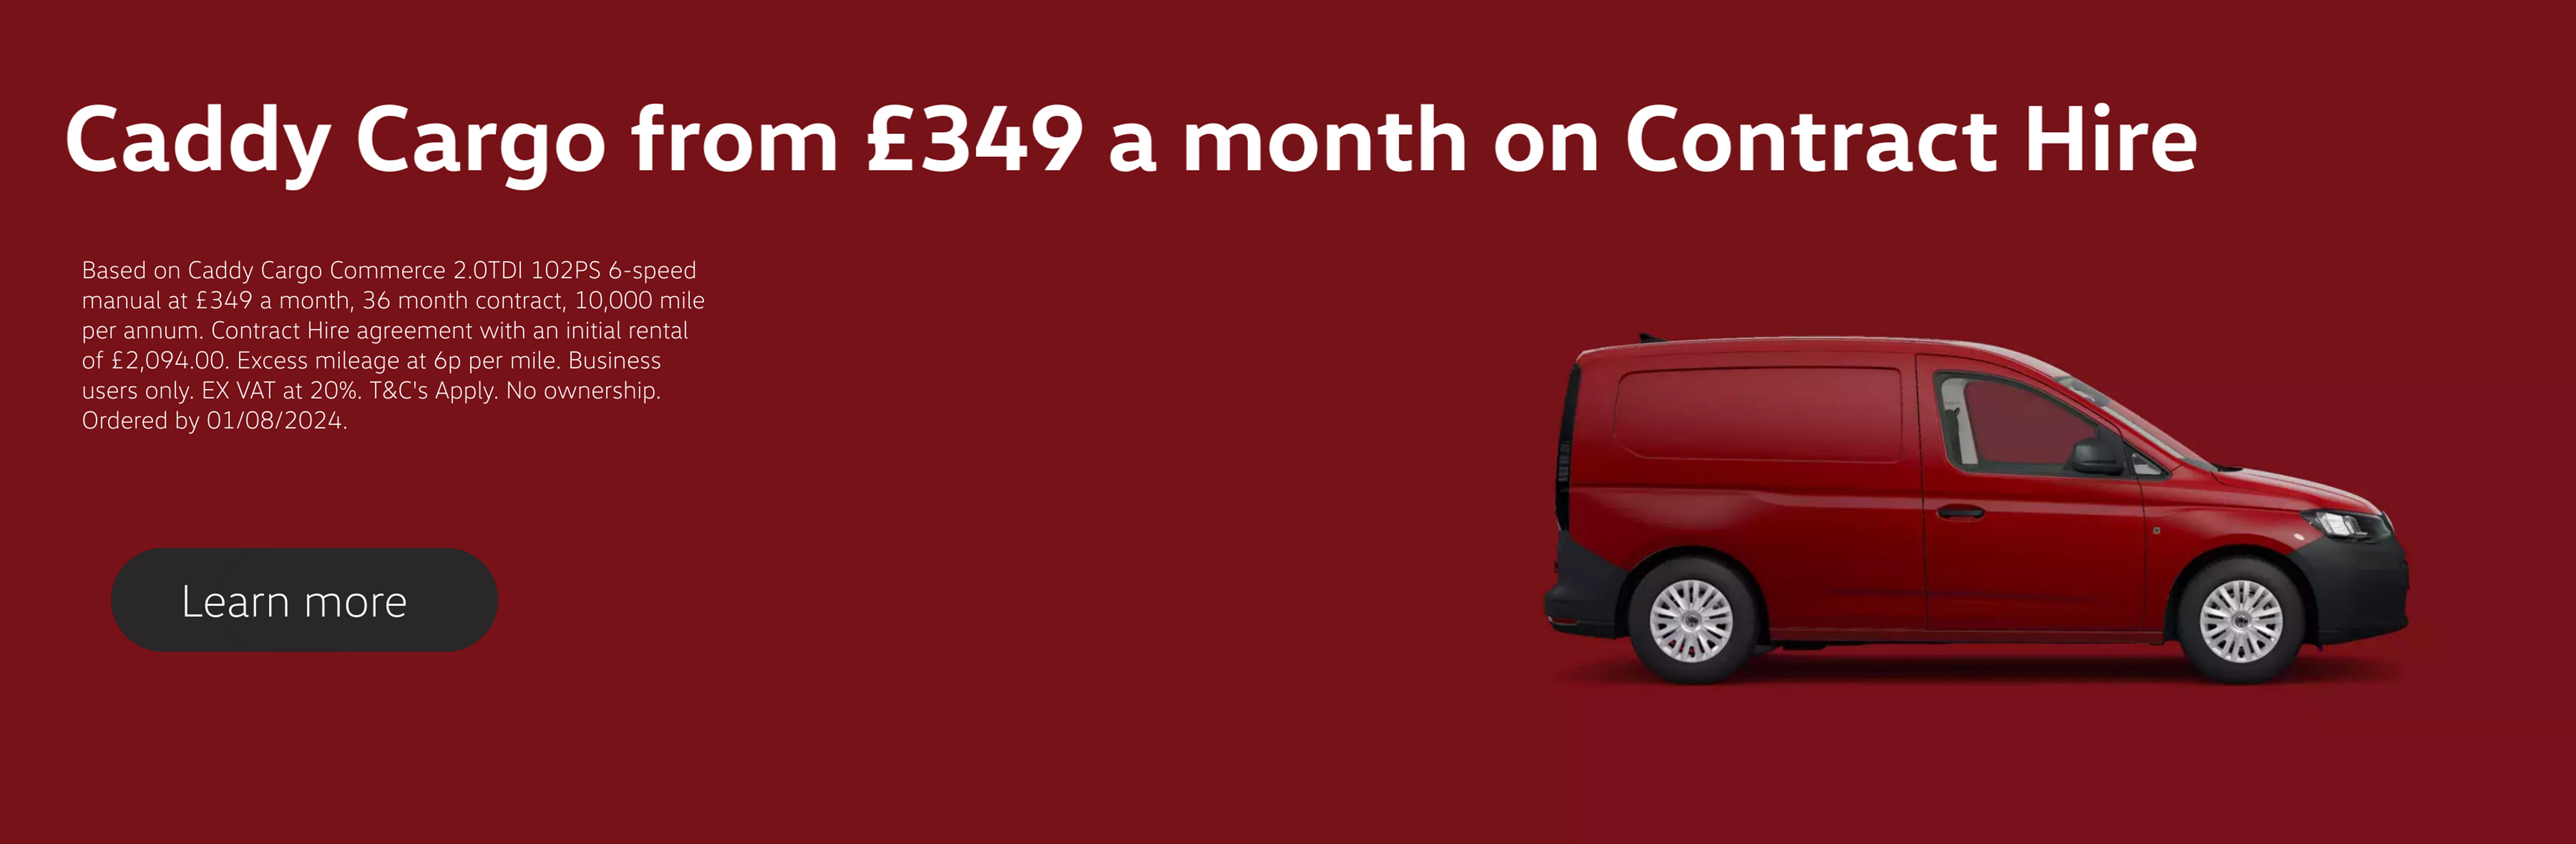 Caddy Cargo £349 Offer